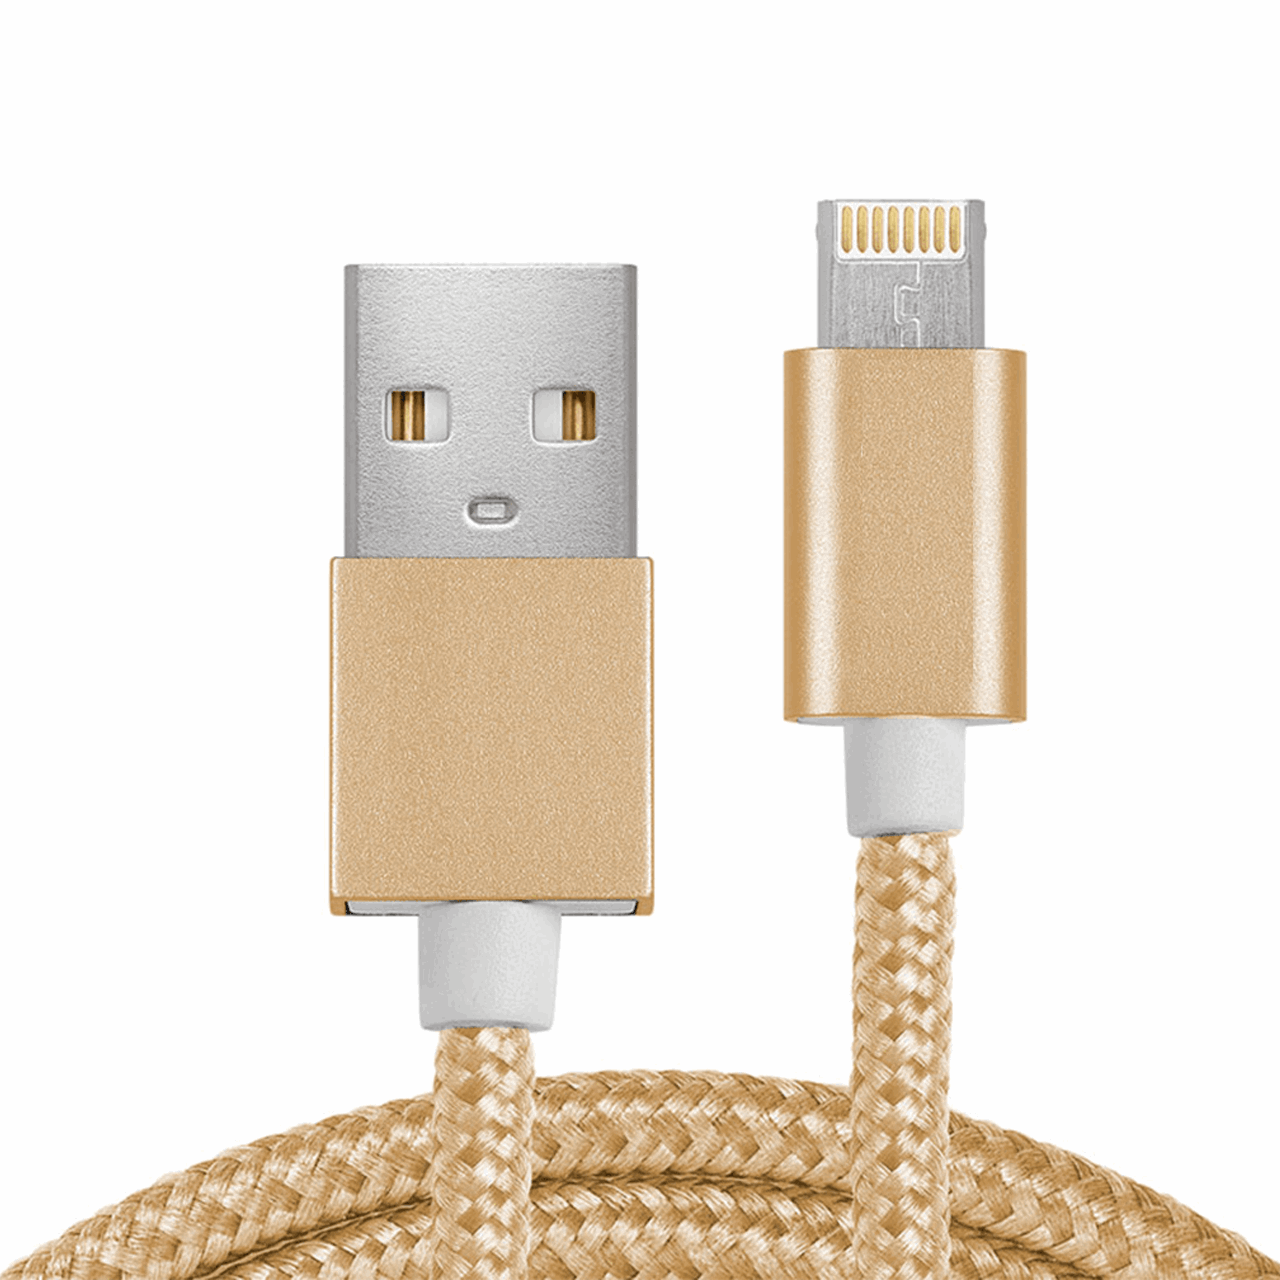 کابل تبدیل USB به Micro USB و Lighting مدل 2In1 به طول 1 متر